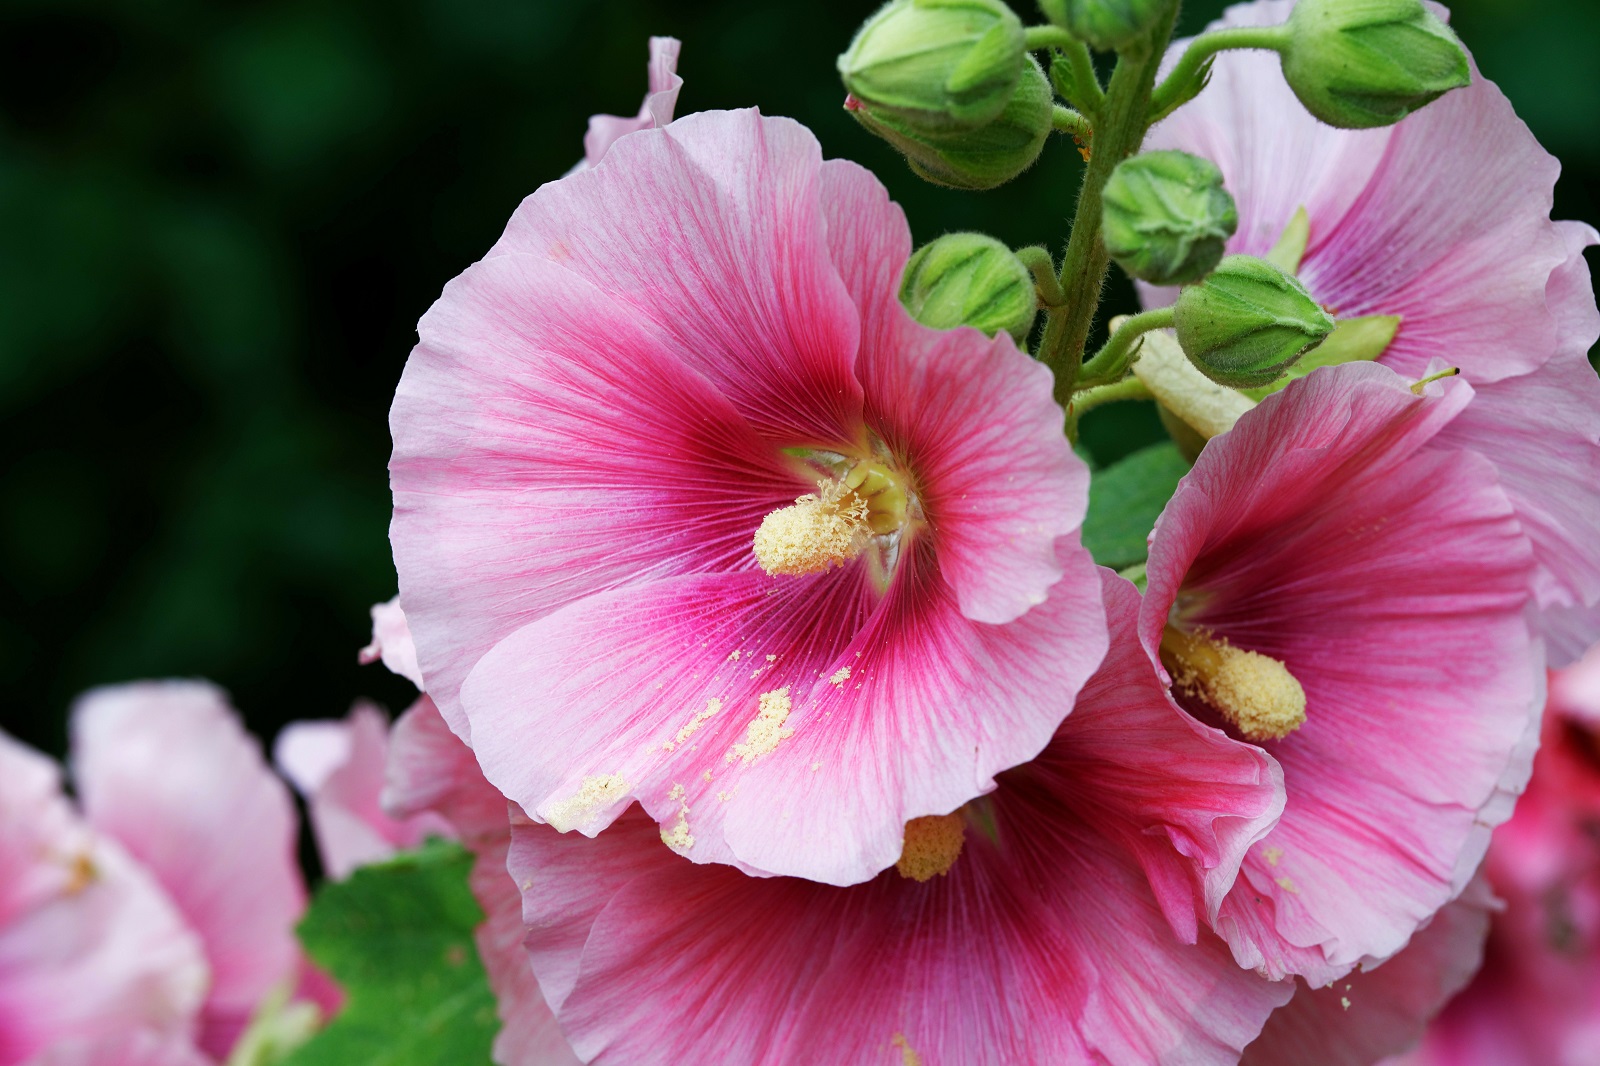 Magnifique floraison de roses trémières. © Gehapromo, Adobe Stock